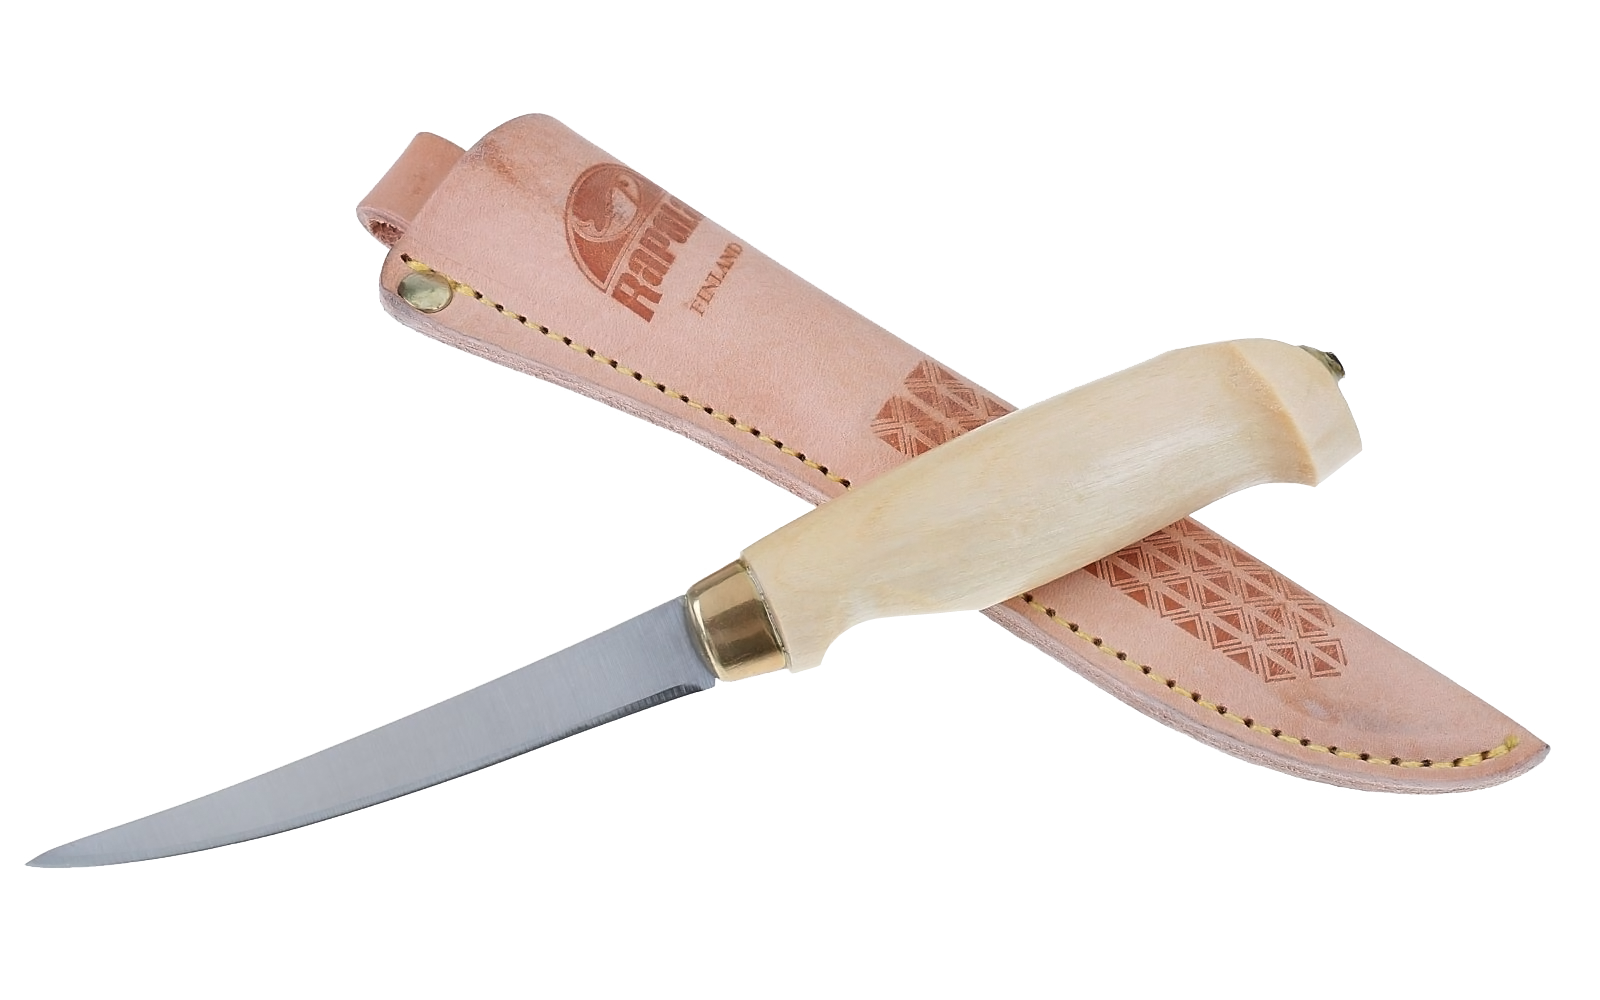 Филейный нож, Rapala, FNF4, нержавеющая сталь, кожаный чехол